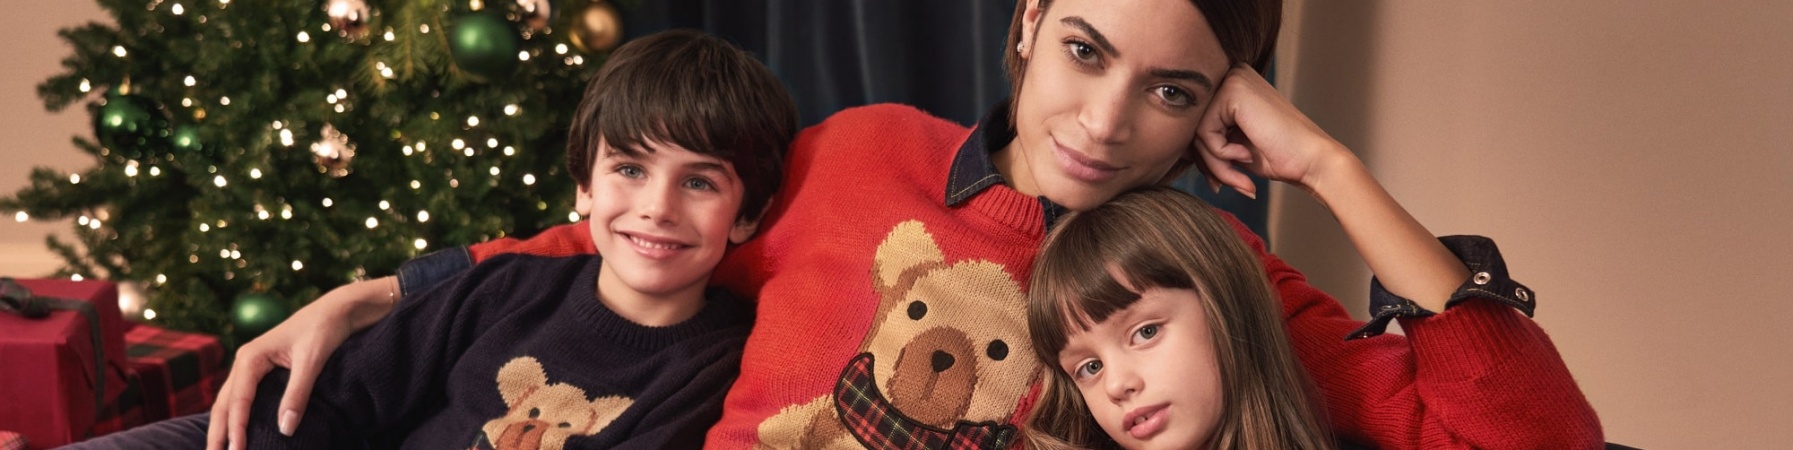 la cantante Elodie seduta su un divano insieme a una bambina e un bambino. Tutti e 3 indossano un maglione natalizio e alle loro spalle cè un albero di Natale